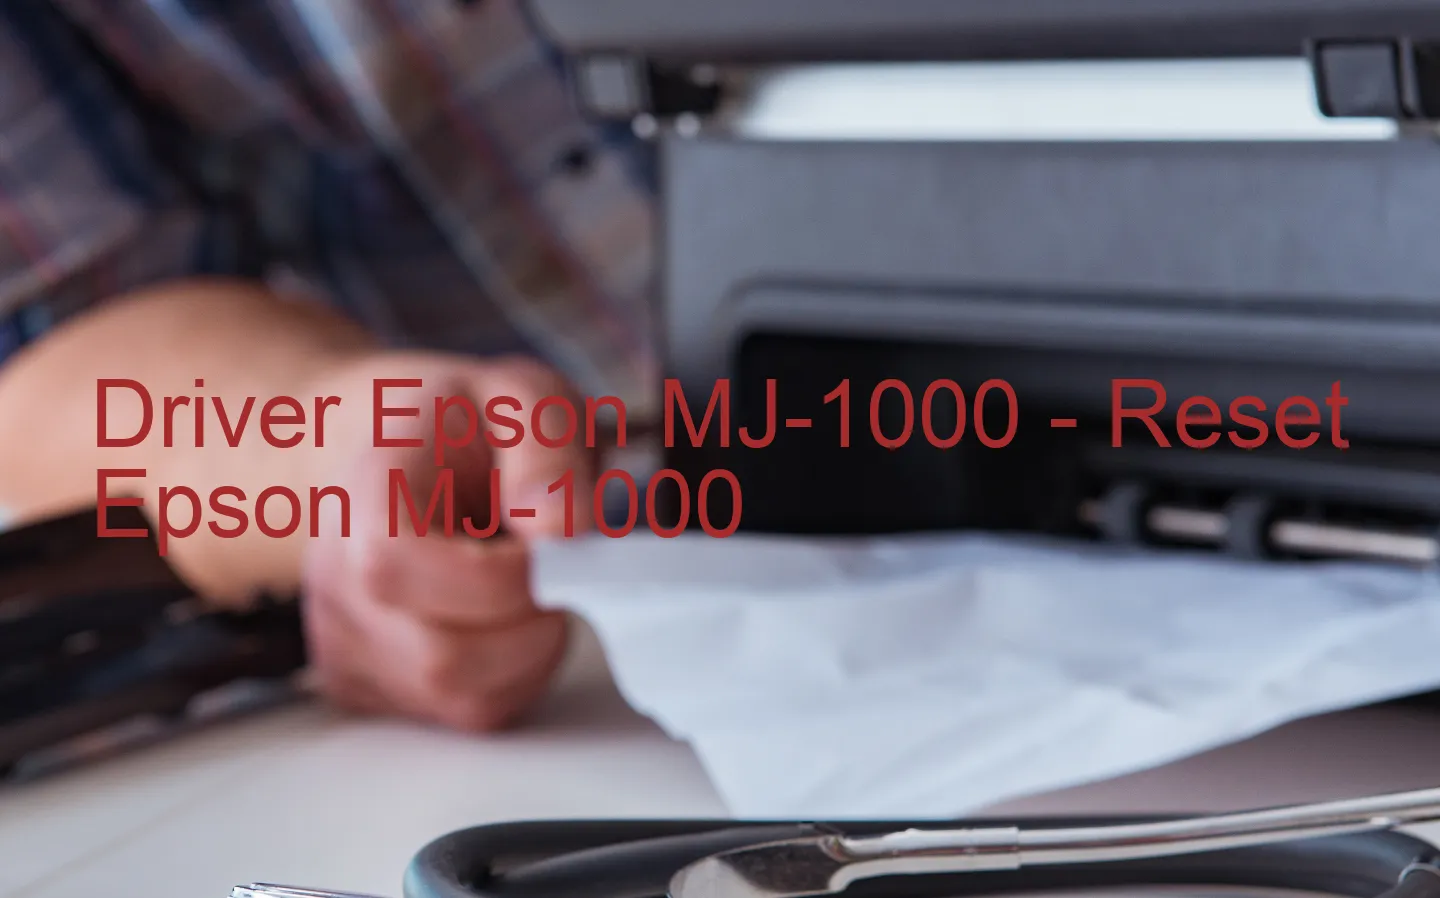 Epson MJ-1000のドライバー、Epson MJ-1000のリセットソフトウェア